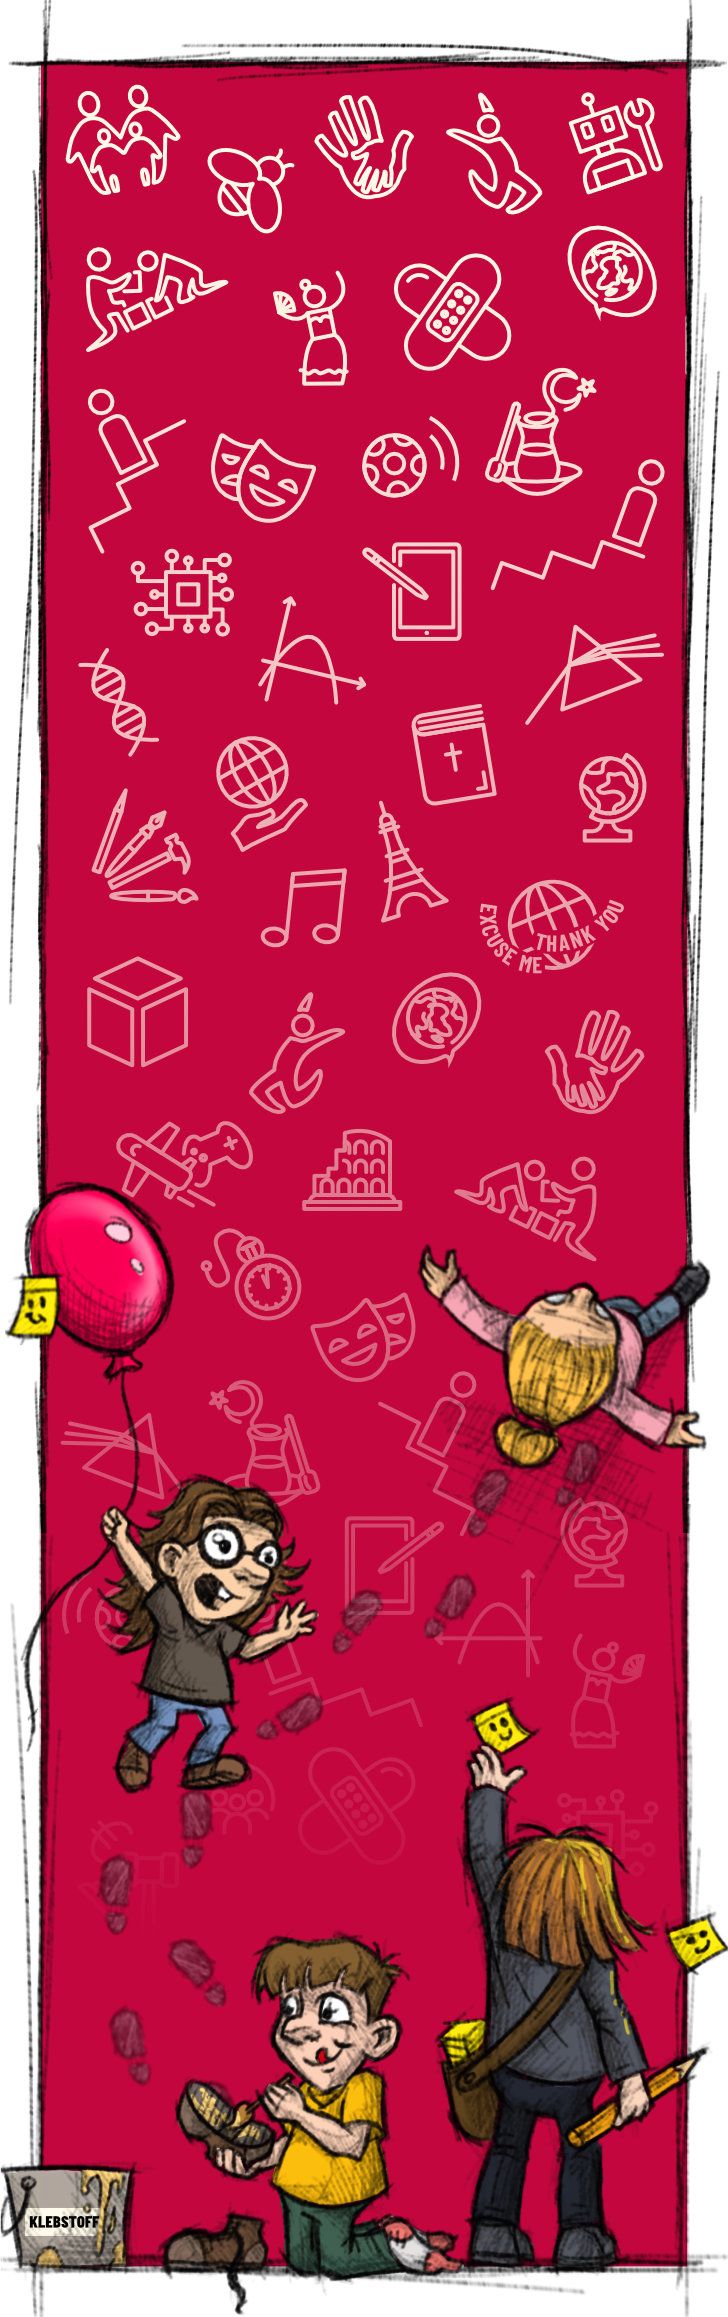 Ein hochformatiges Bild, dass skizzenhafte Illustrationen im Cartoon Style von Schülern zeigt, vor einem roten Hintergrund auf dem die Icons für JEG Julius Echter Gymnasium platziert sind